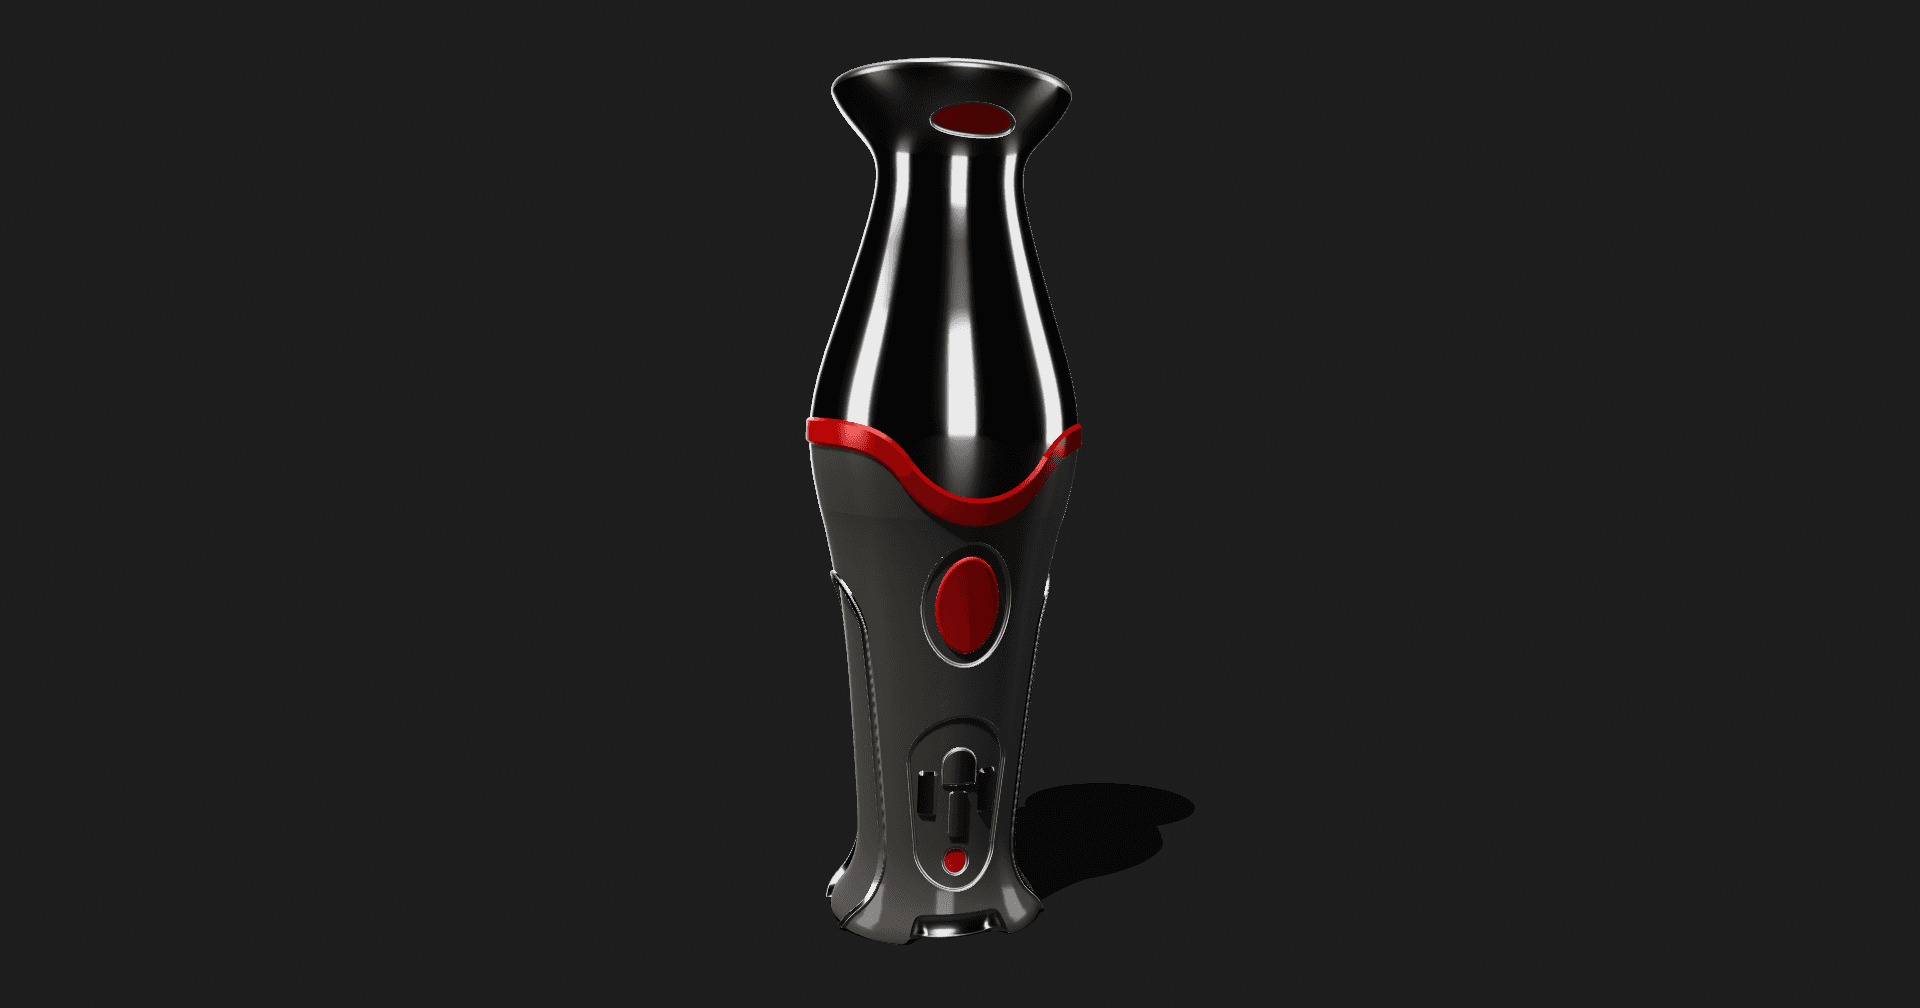 scifi vase. 3d model